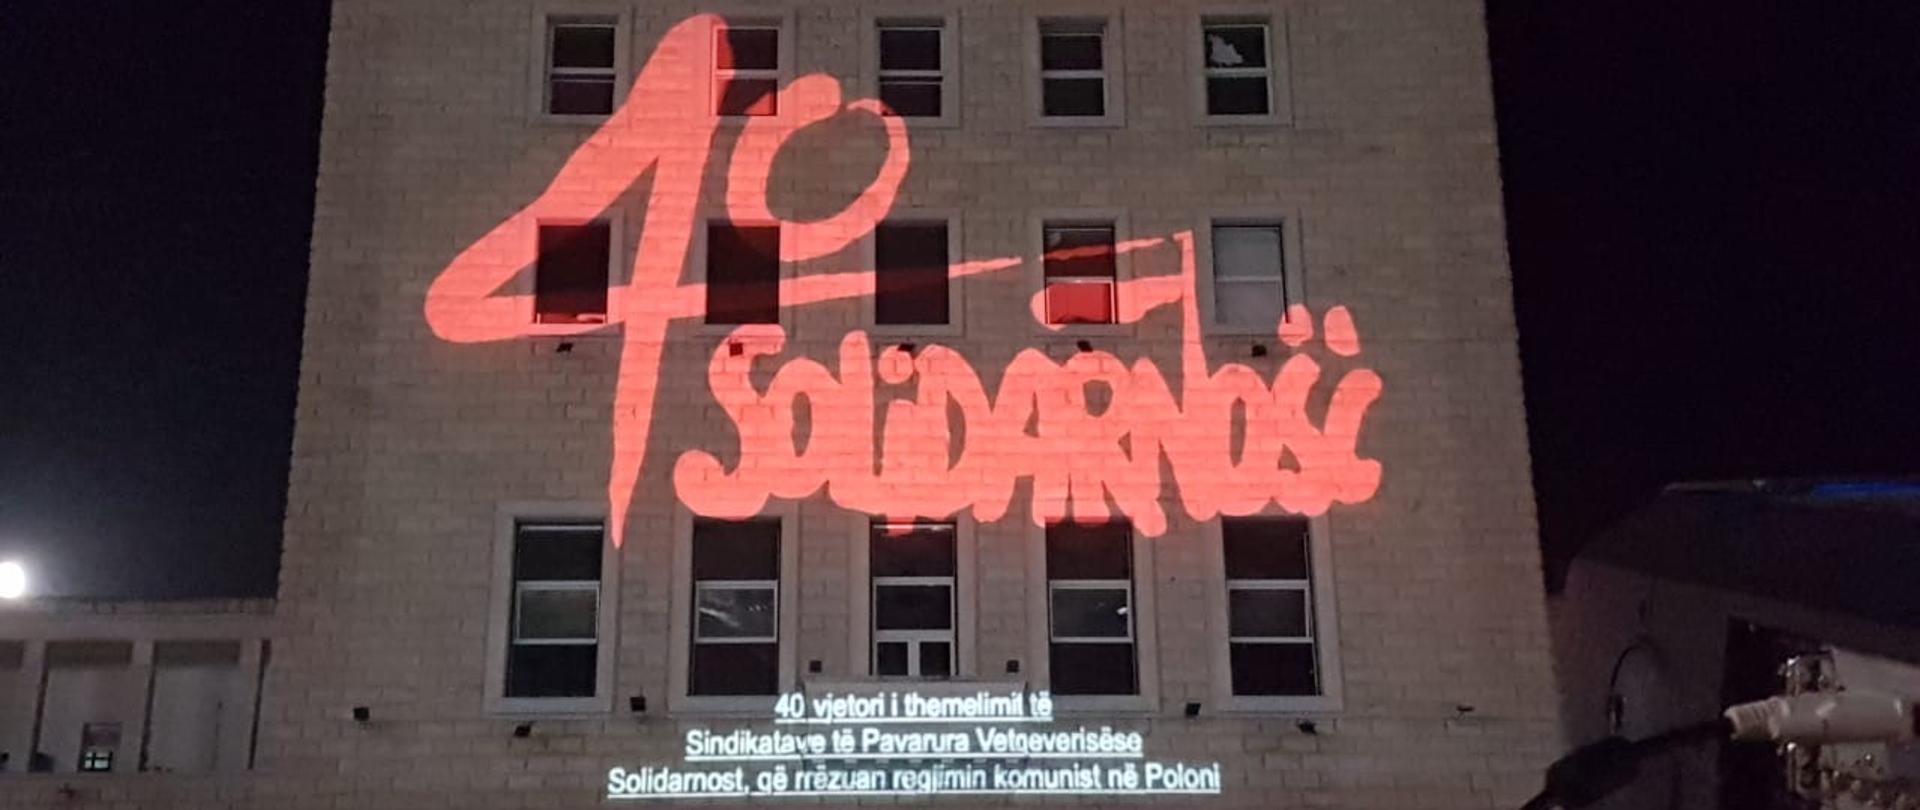 W dn. 31.08 br. z okazji 40. rocznicy podpisania Porozumień Sierpniowych gmach politechniki tirańskiej w 🇦🇱 został podświetlony w barwach narodowych Rzeczypospolitej oraz logo „40-lecia Solidarności”.